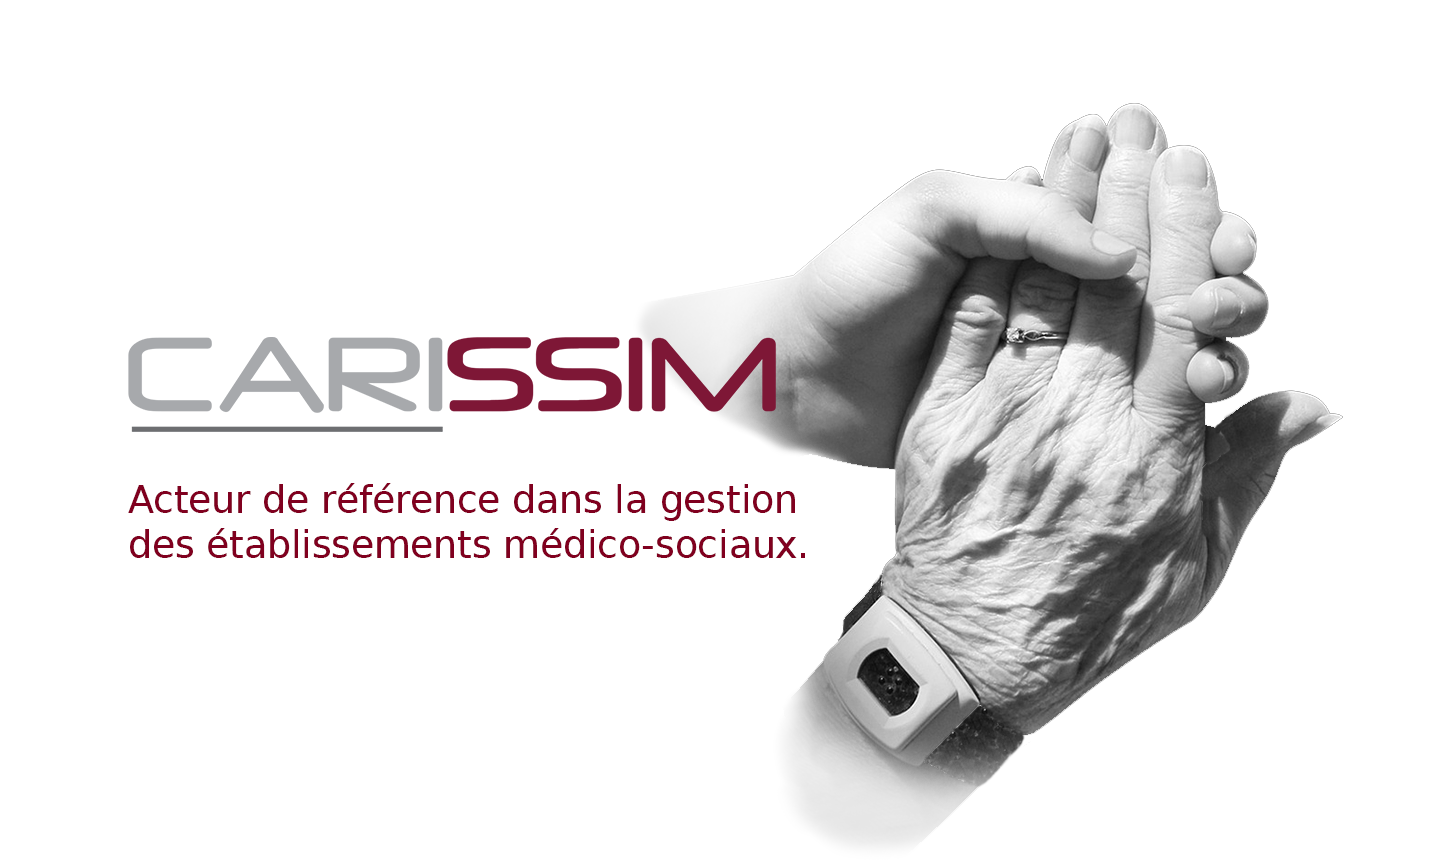 Carissim, acteur de référence dans la gestion des établissements médico-sociaux